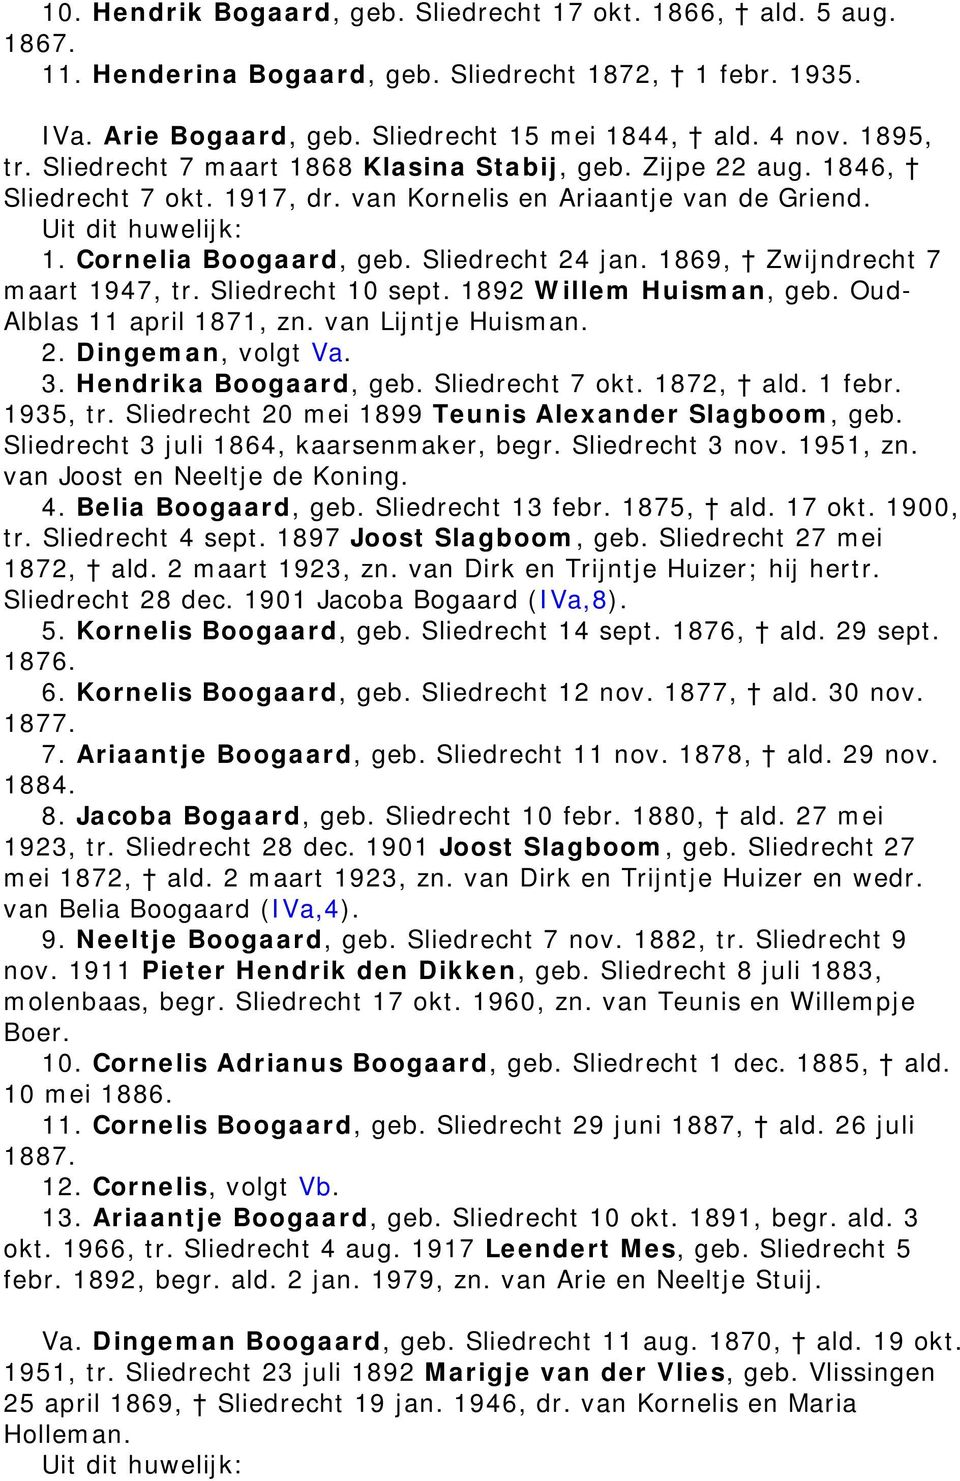 1869, Zwijndrecht 7 maart 1947, tr. Sliedrecht 10 sept. 1892 Willem Huisman, geb. Oud- Alblas 11 april 1871, zn. van Lijntje Huisman. 2. Dingeman, volgt Va. 3. Hendrika Boogaard, geb.